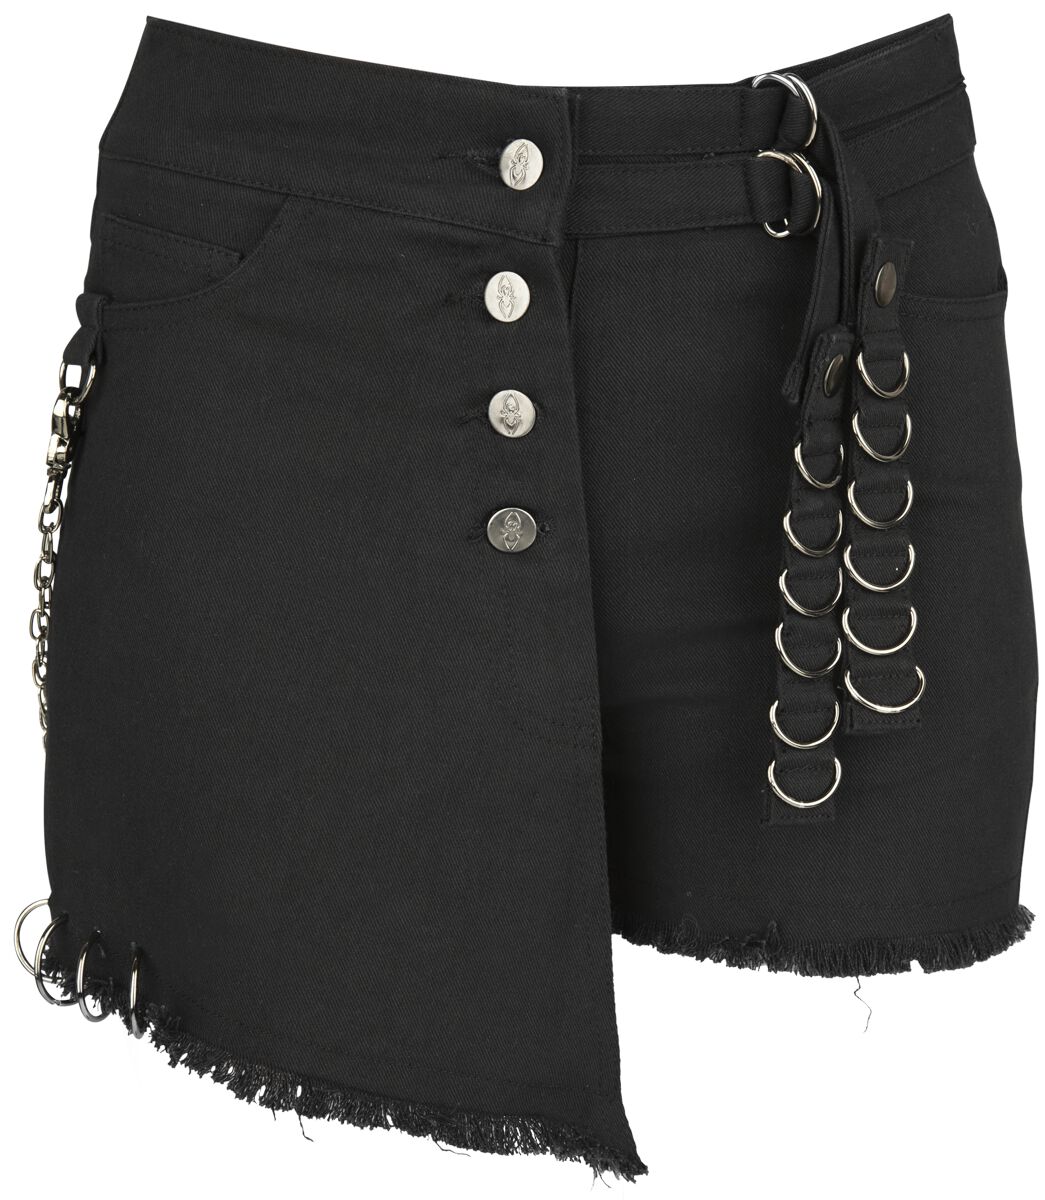 Gothicana by EMP - Gothic Short - Black Shorts With Details - 27 bis 31 - für Damen - Größe 31 - schwarz